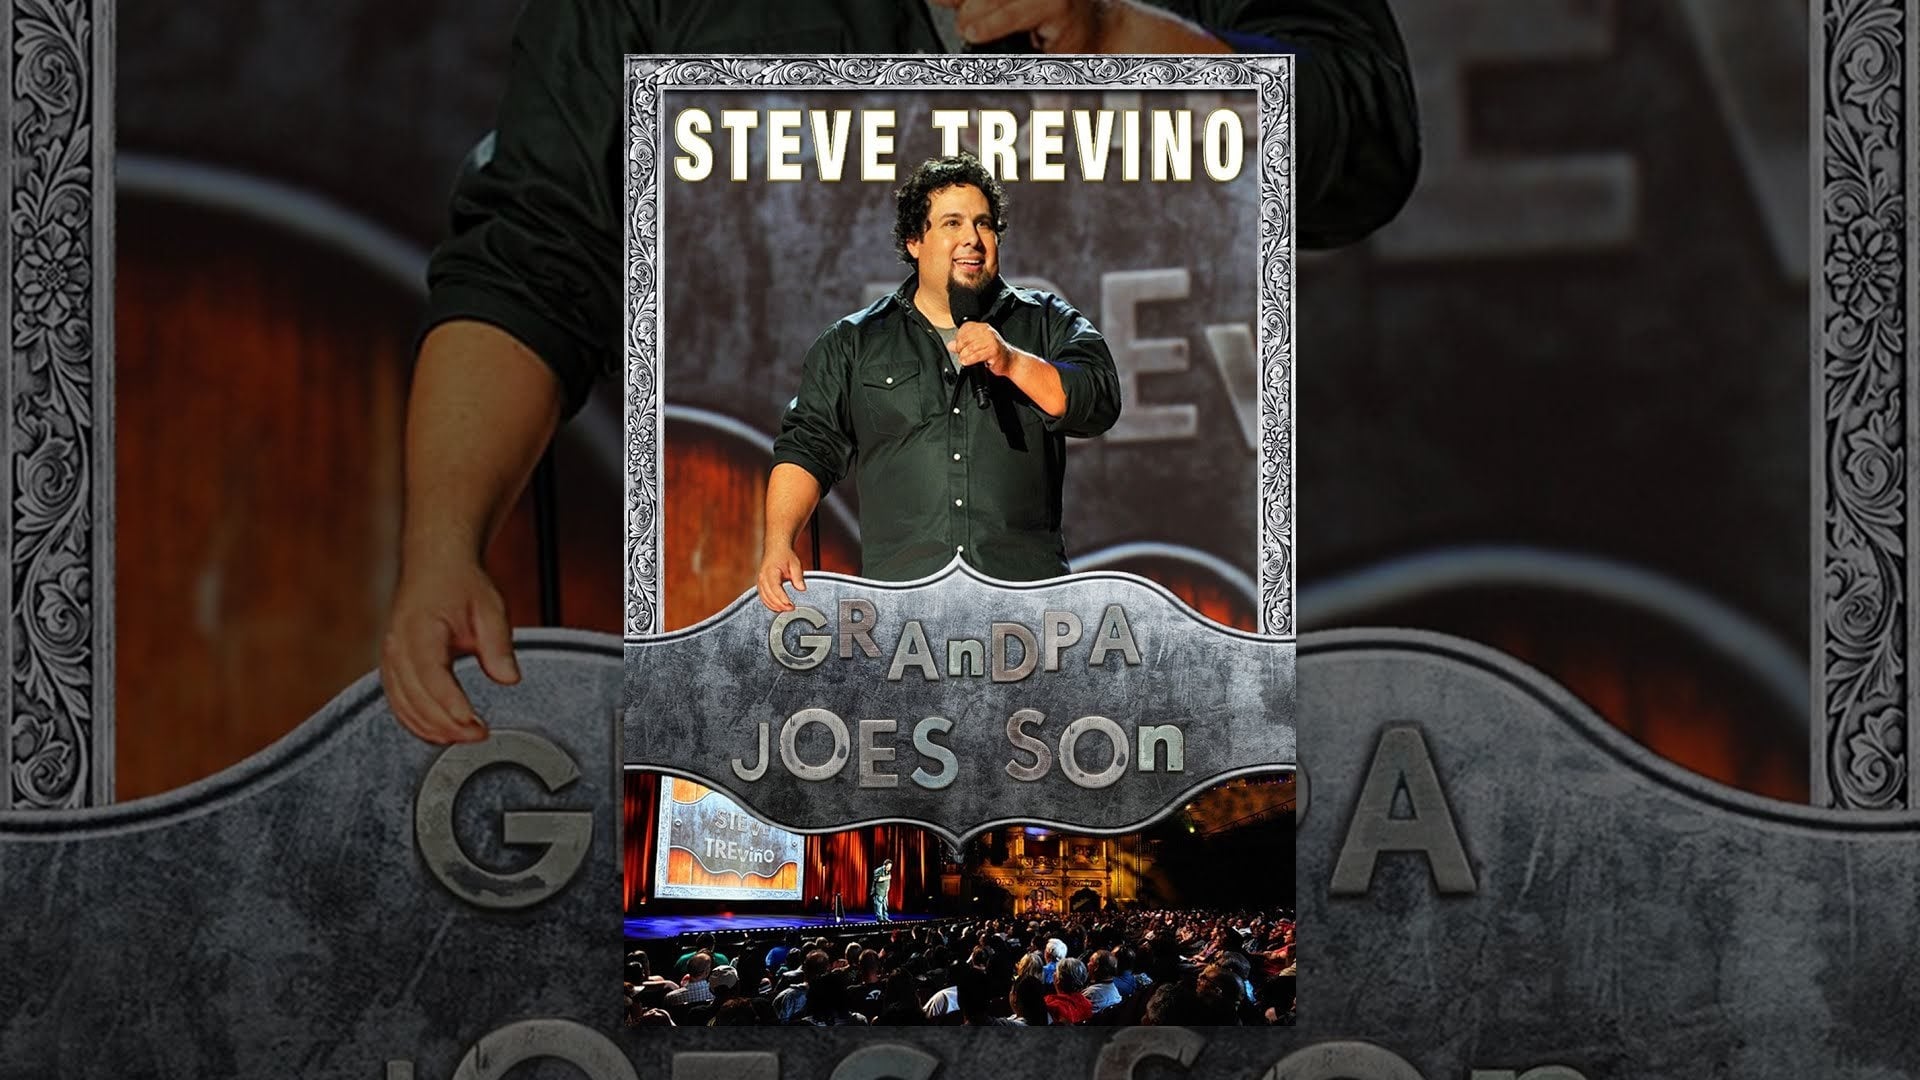 Steve Trevino: Grandpa Joe’s Son